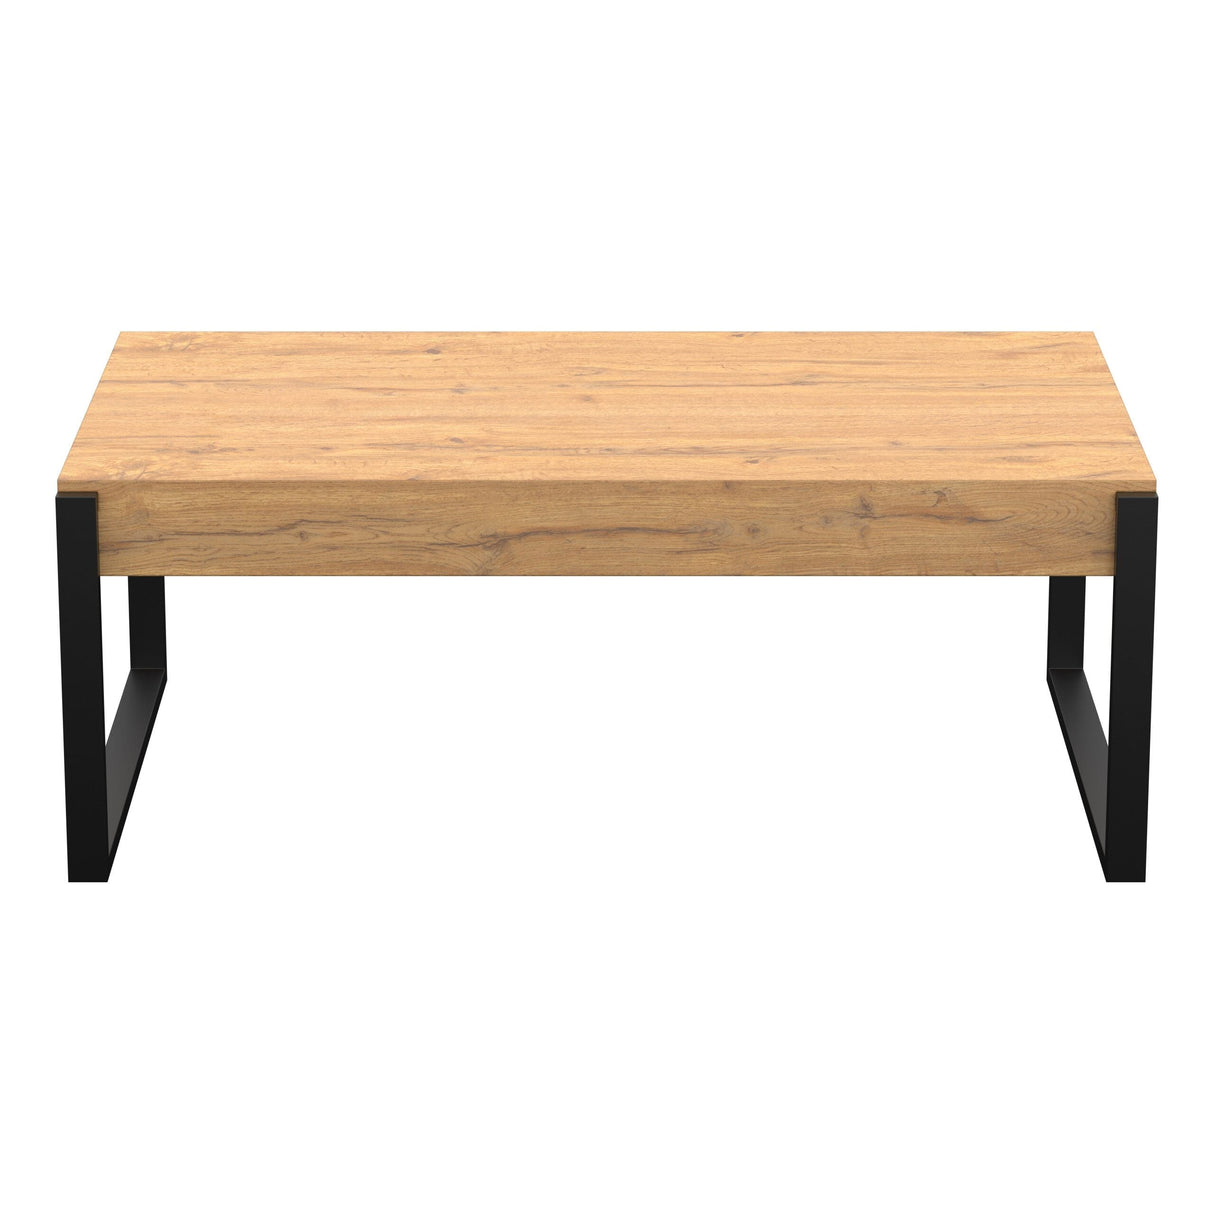 AVF Ridgewood 110cm Wide Rustic Light Wooden Coffee Table (FT110RIDLW)